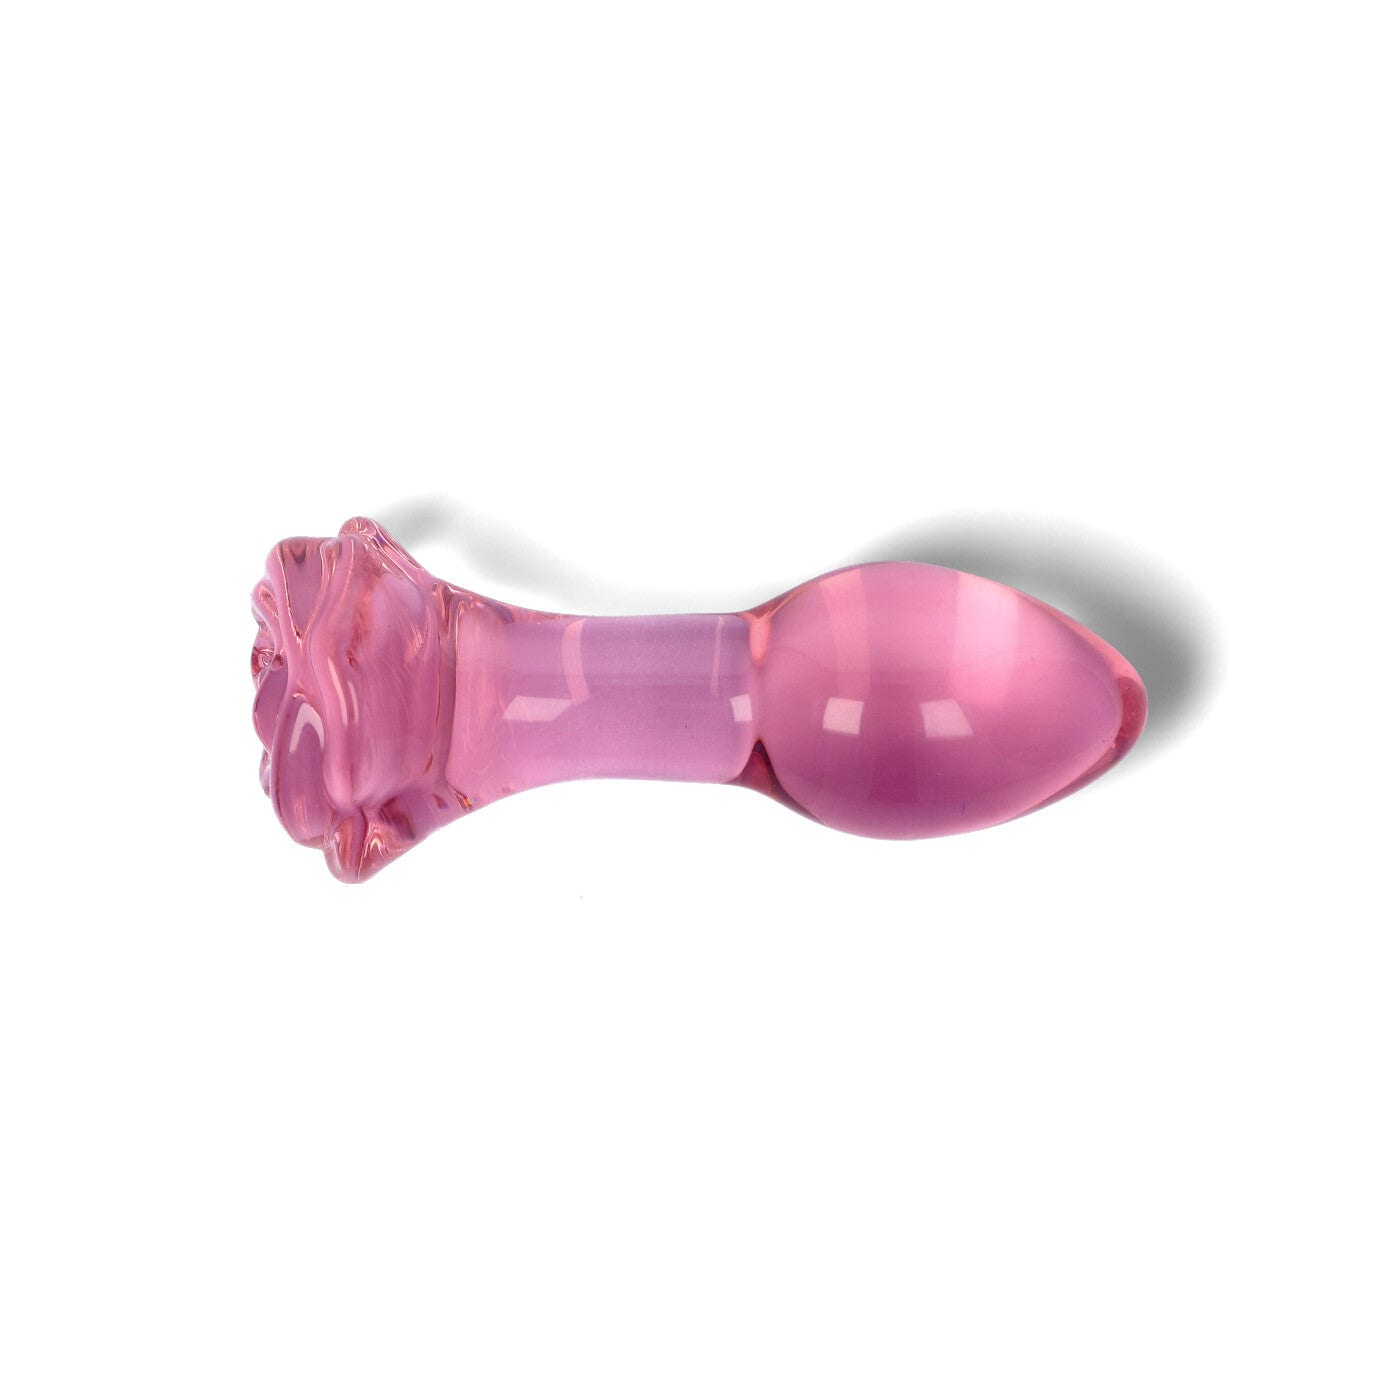 Rosebud rose formet lyserød buttplug i glas ovenfra